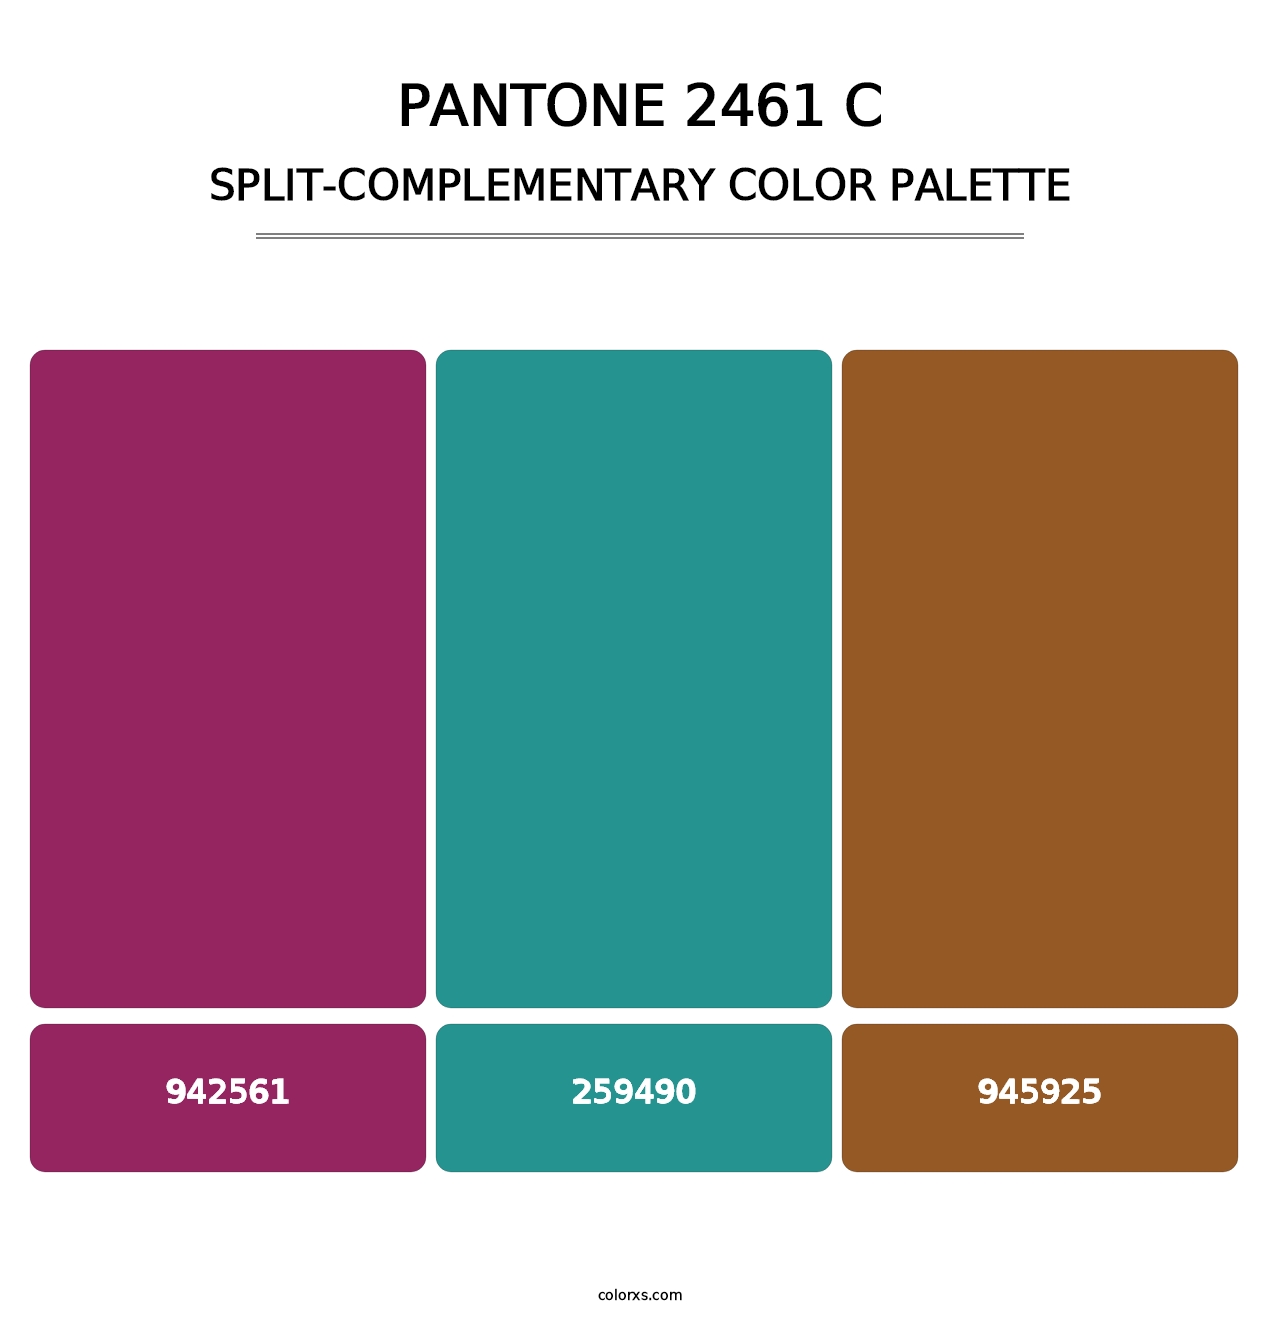 PANTONE 2461 C - Split-Complementary Color Palette